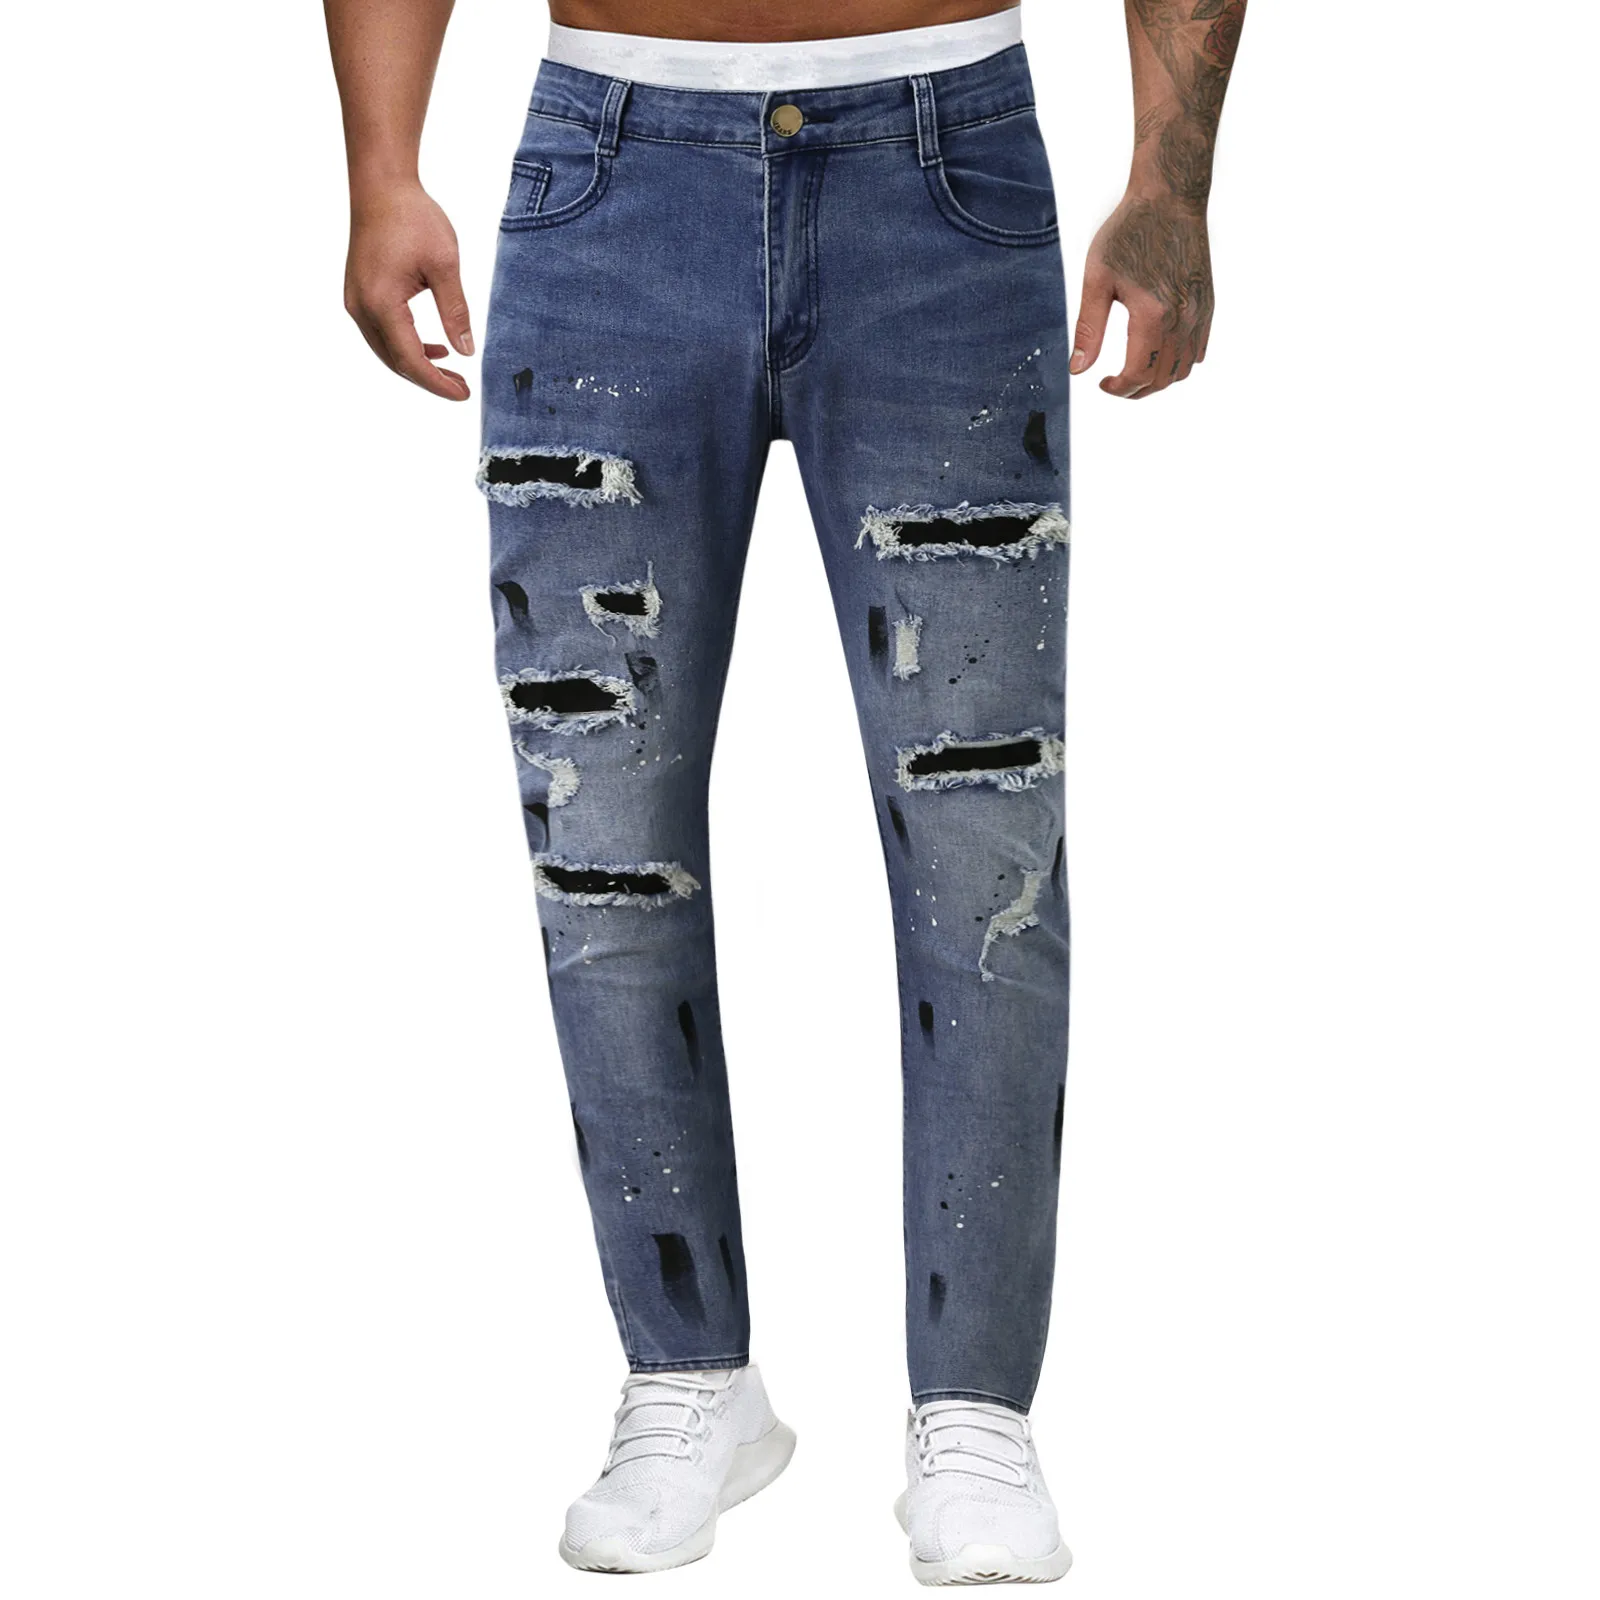 

Темно-синие джинсы мужские повседневные однотонные рваные потертые градиентные потертые брюки с эффектом потертости уличная одежда джинс...